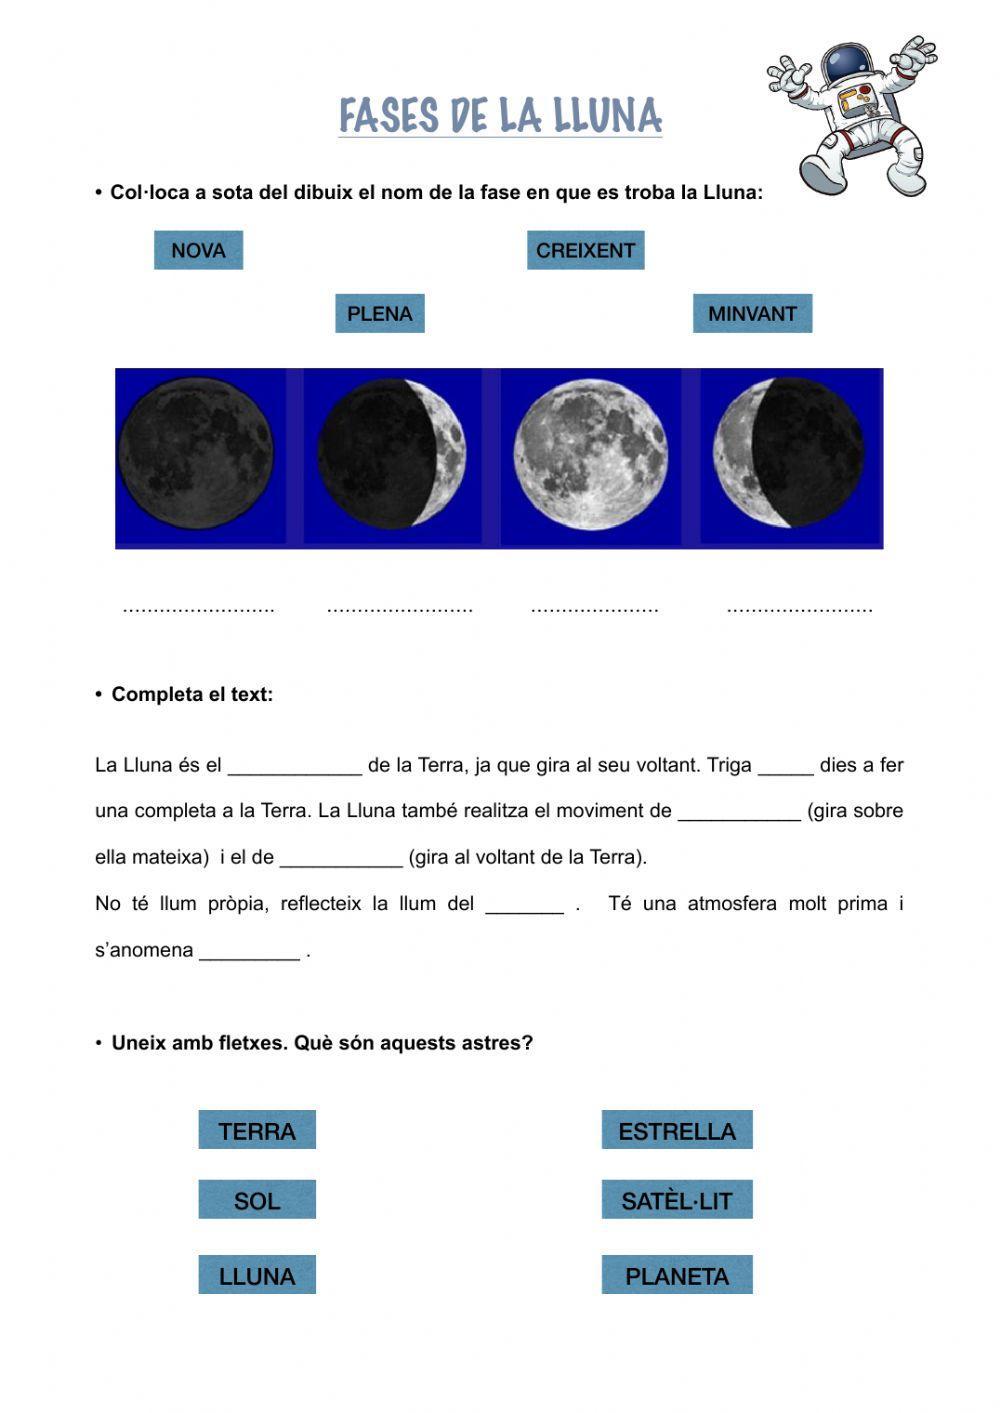 Fases de la Lluna